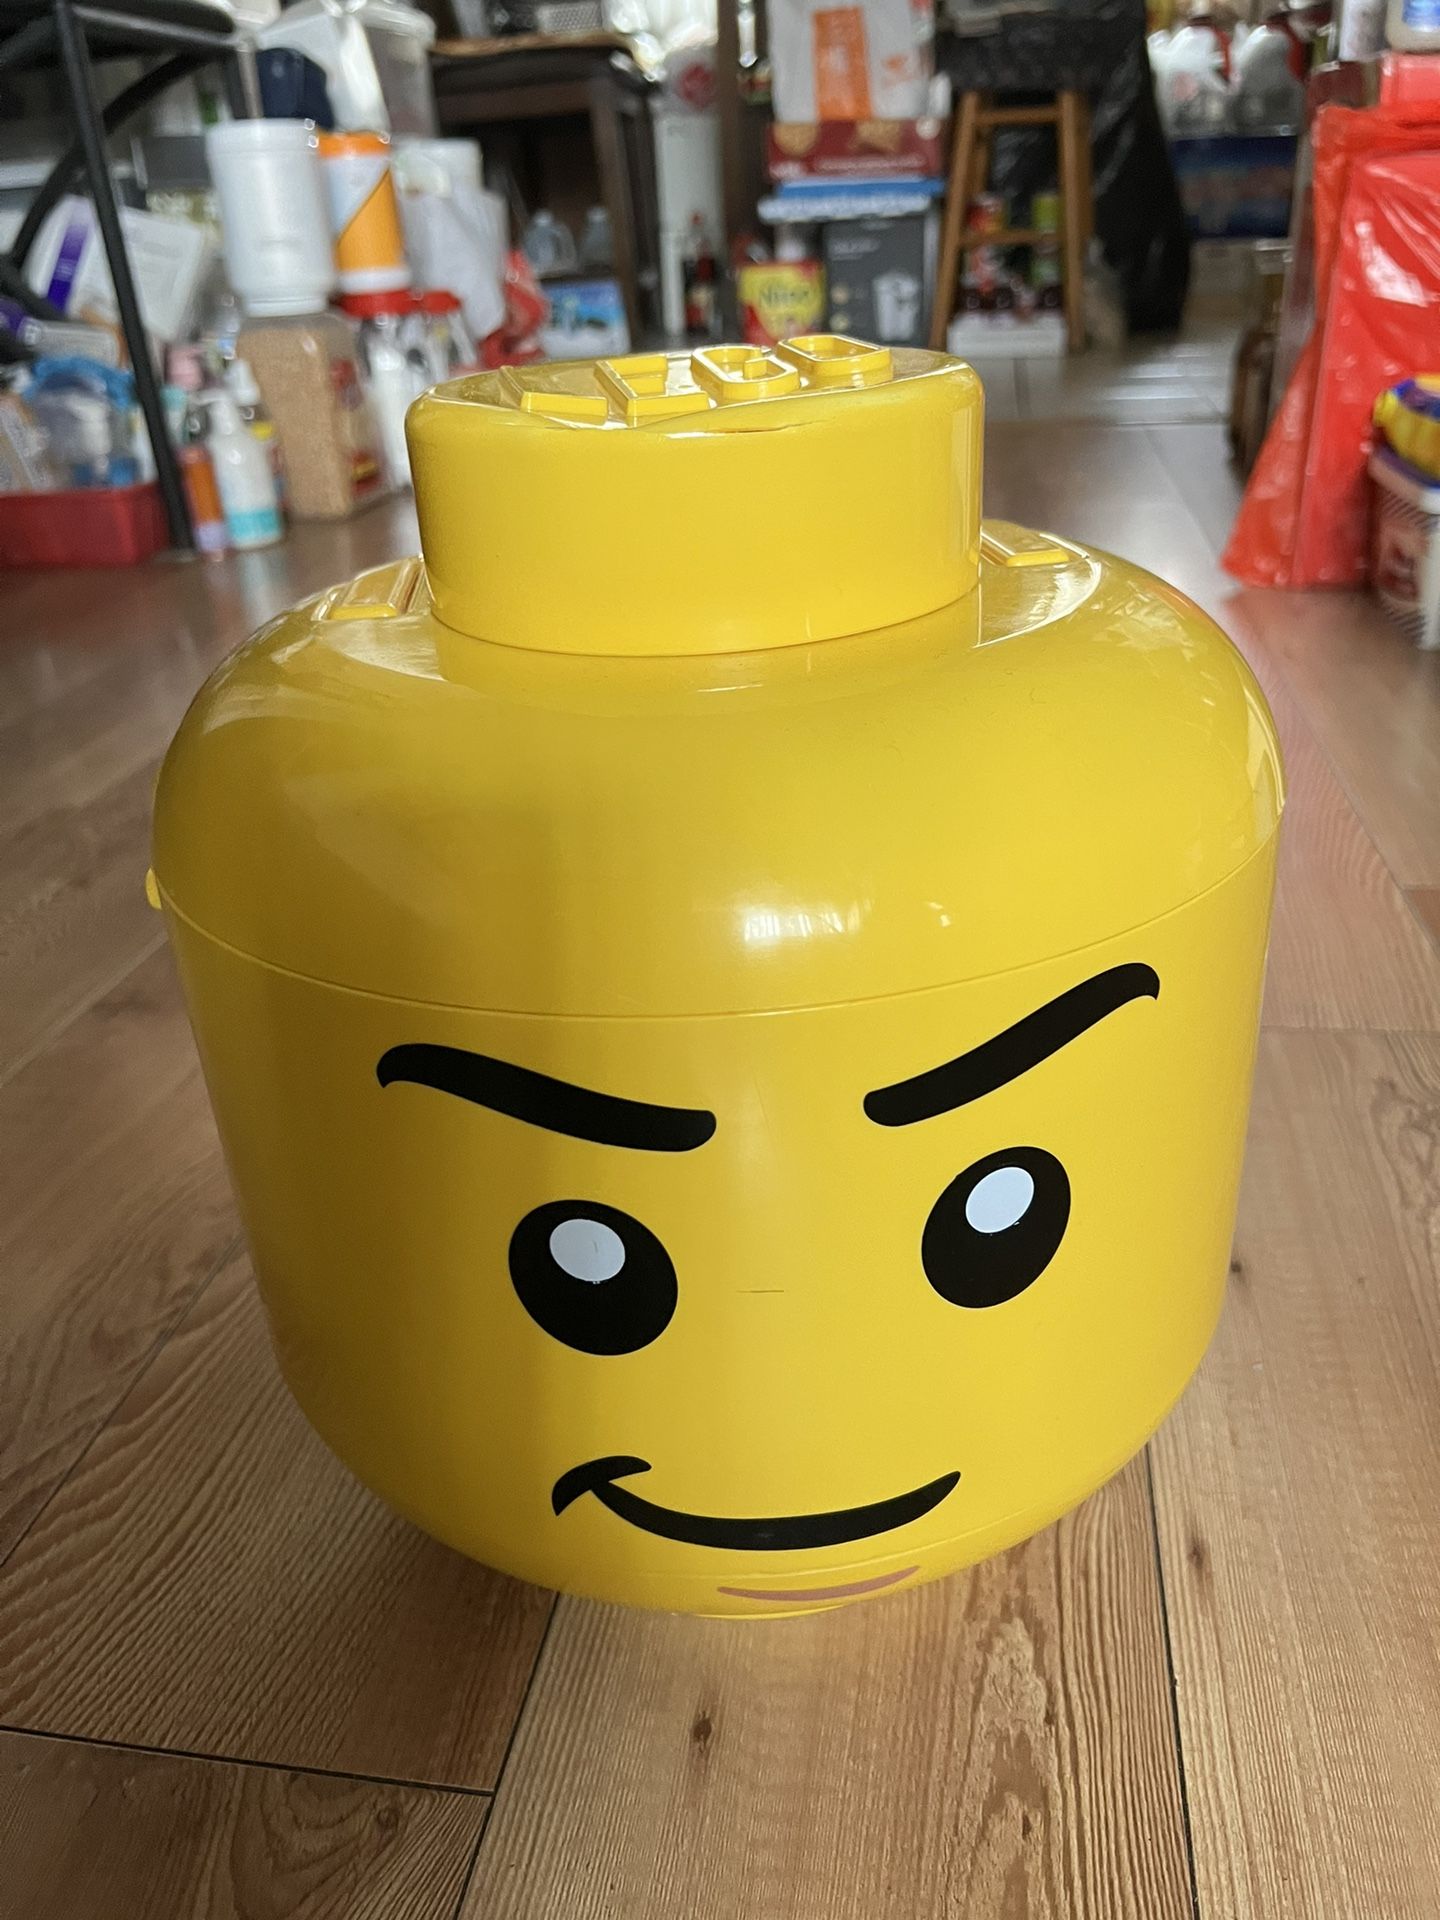 Lego Head With Lego Inside 